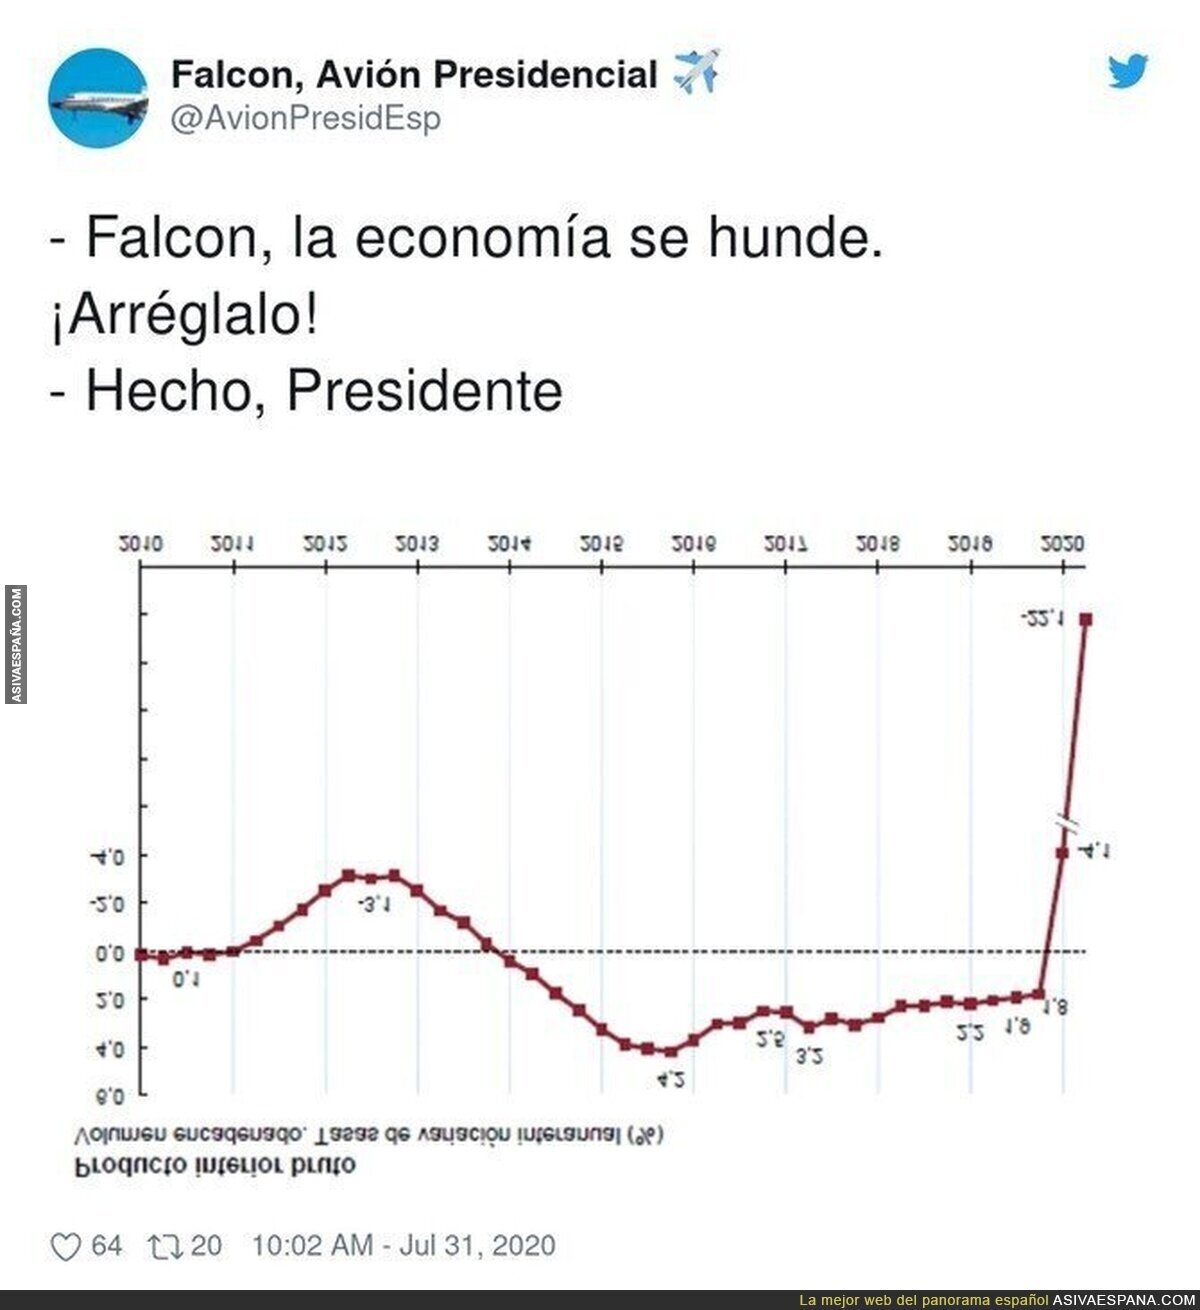 La economía española bajo mínimos